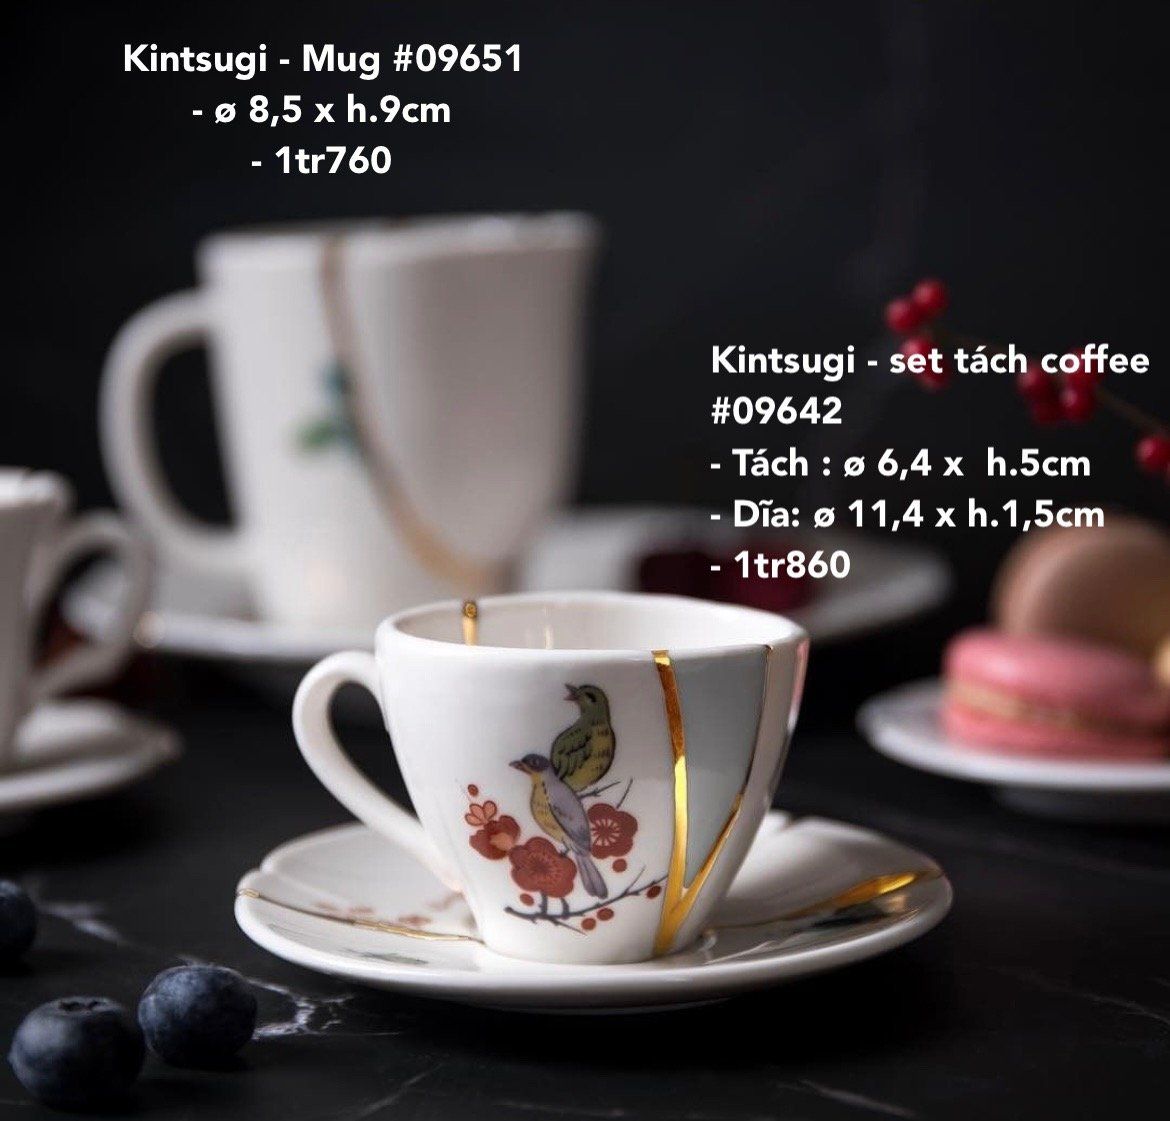  Seletti Kintsugi - 3 set tách coffee 